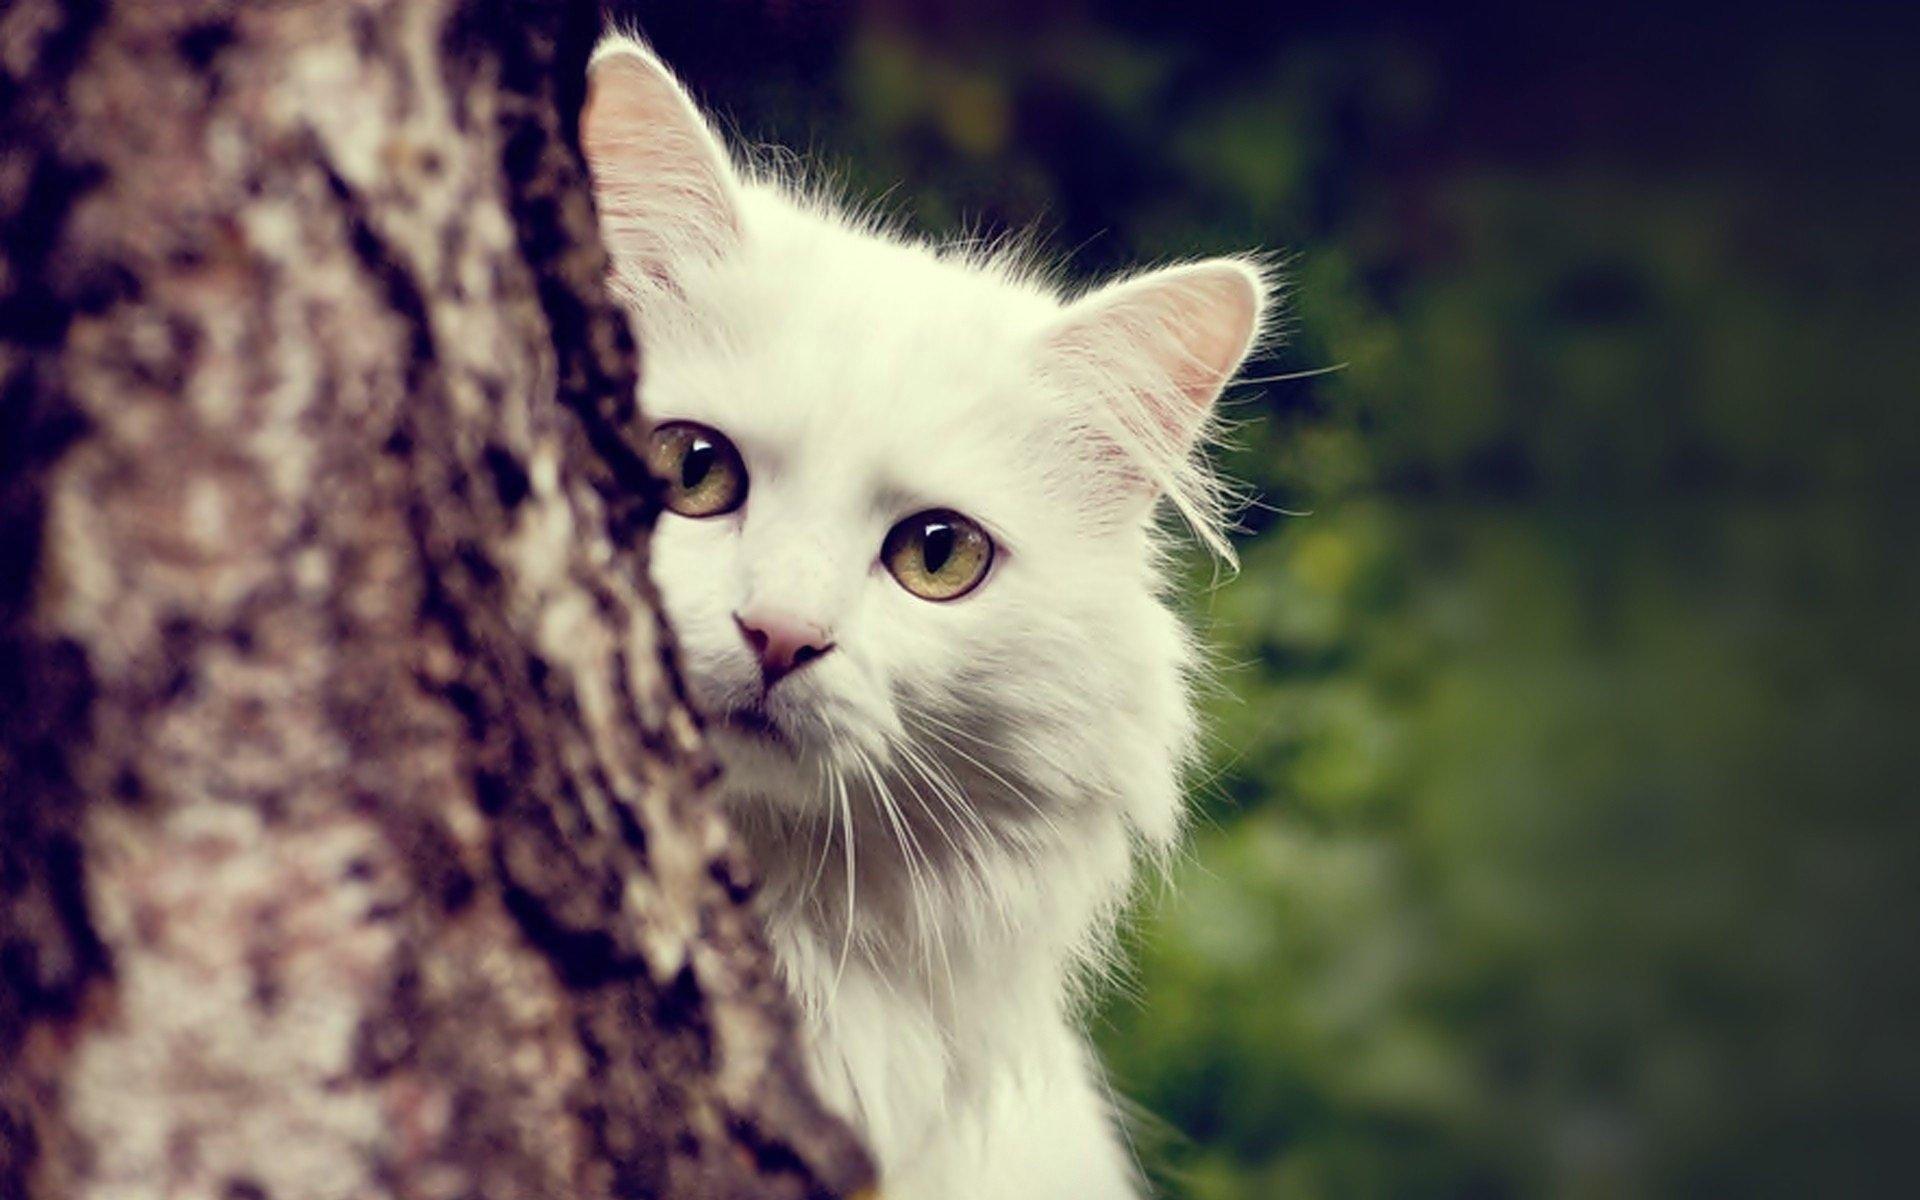 超可爱白色猫猫图片-猫猫萌图-屈阿零可爱屋